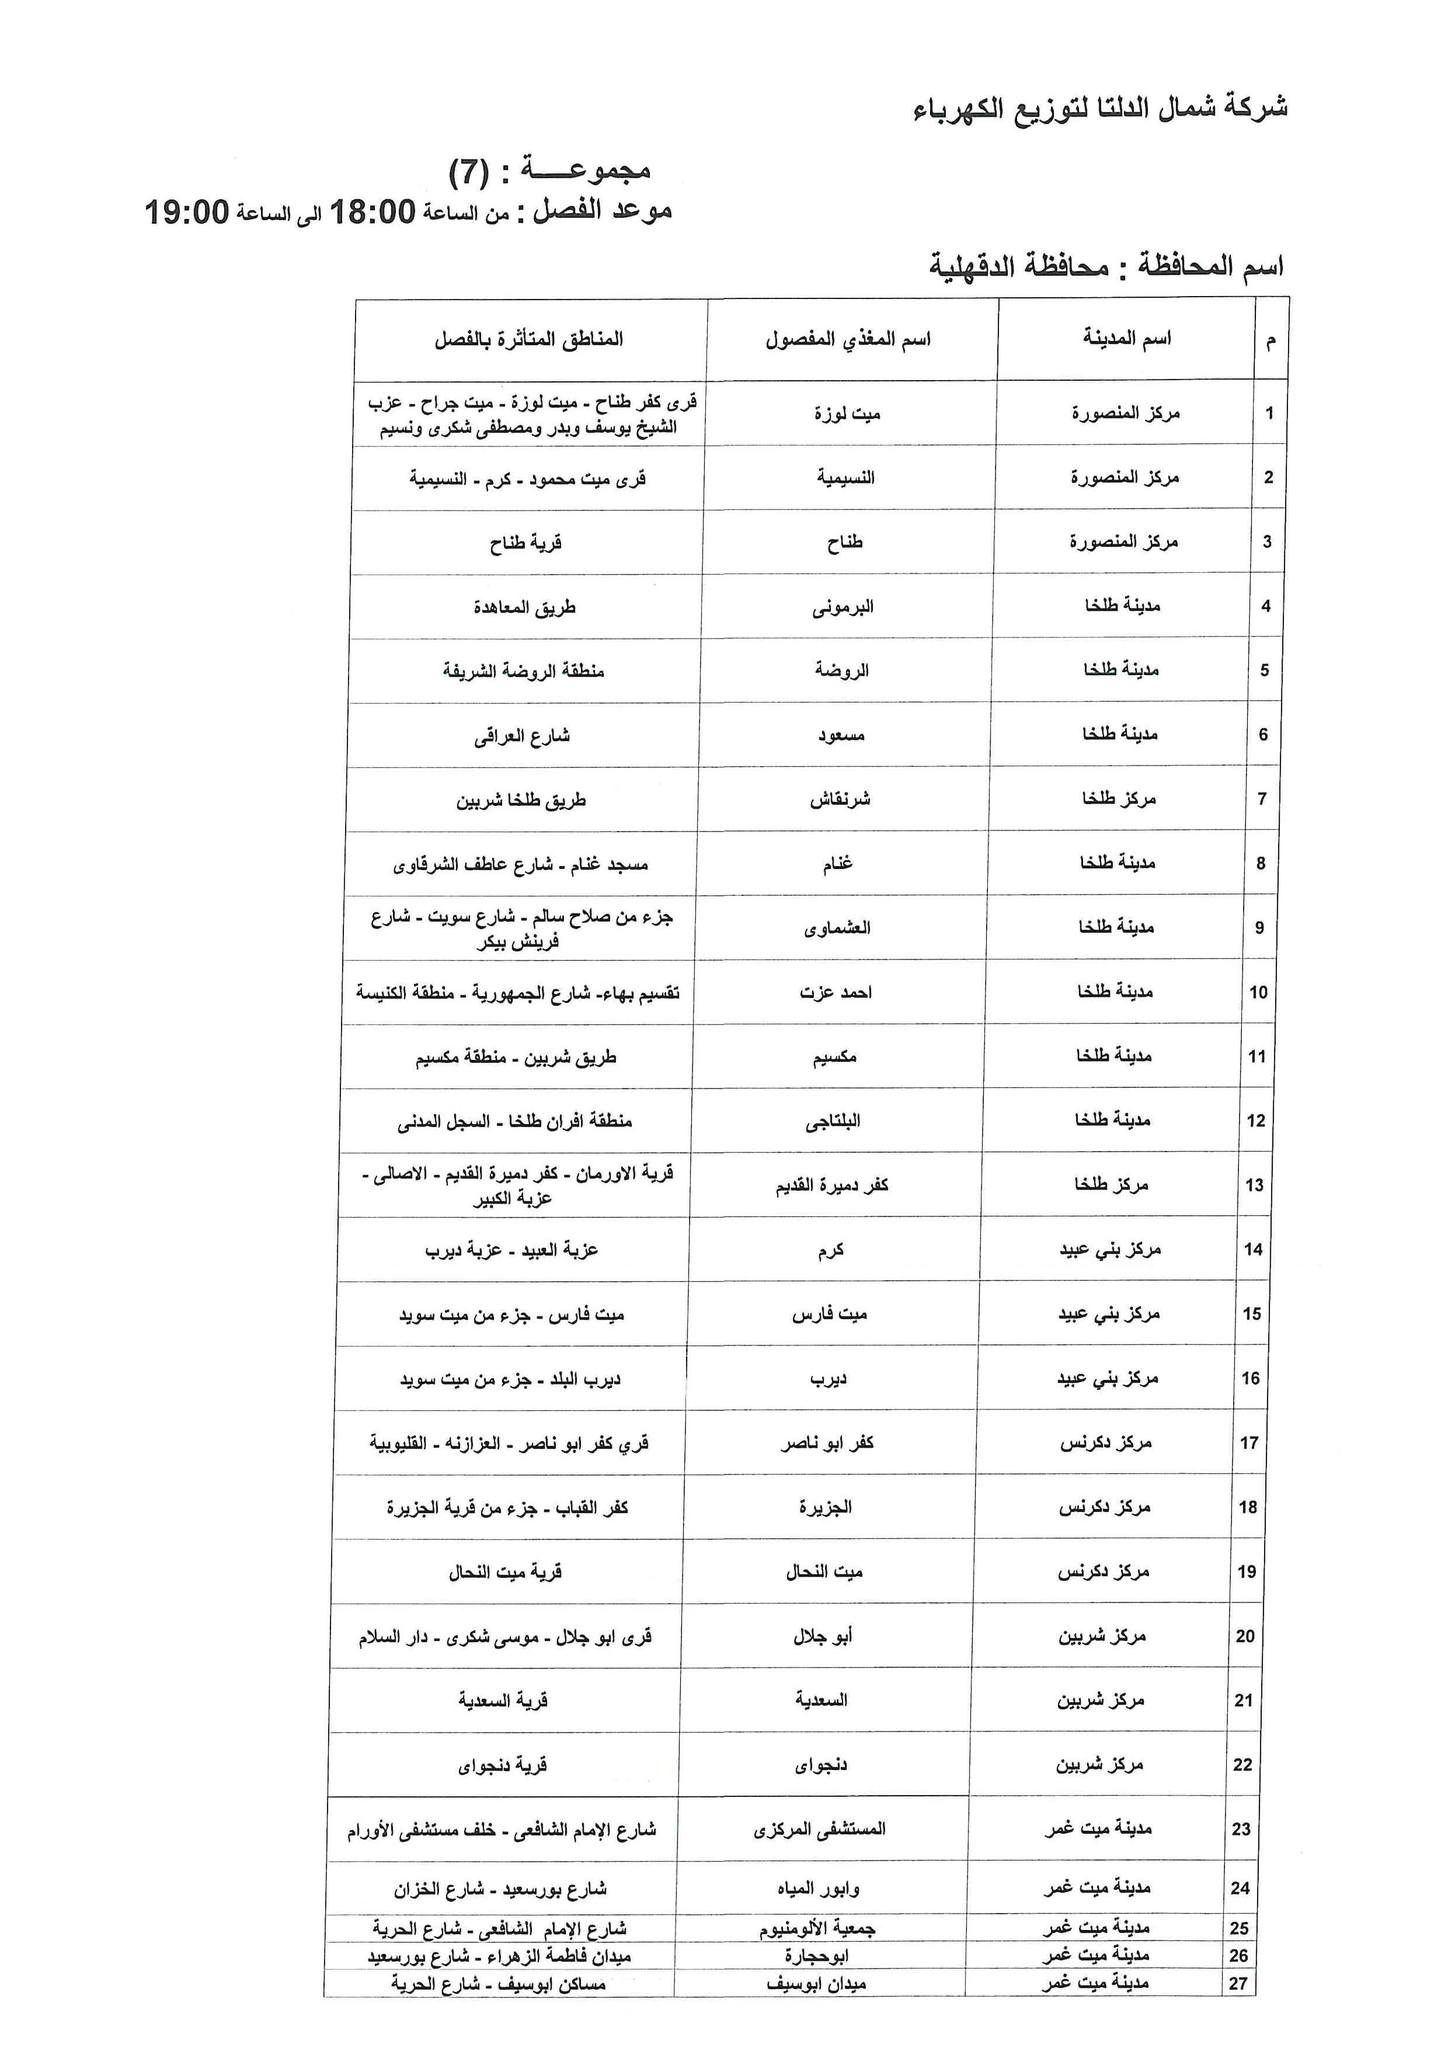 الإعلان عن خطة تخفيف أحمال الكهرباء فى محافظة الدقهلية 12